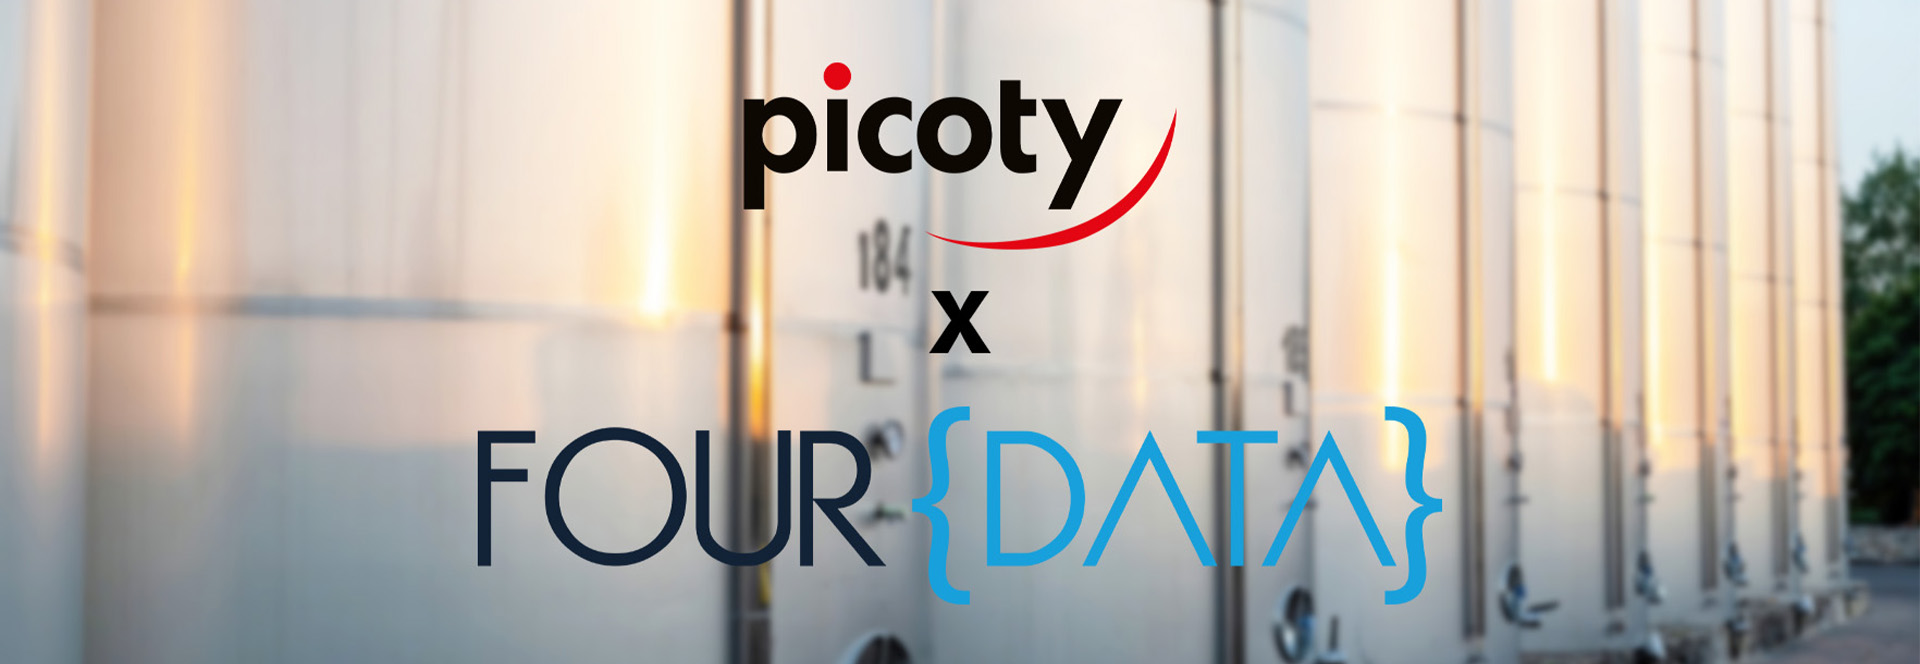 Picoty : Partenariat avec Four Data